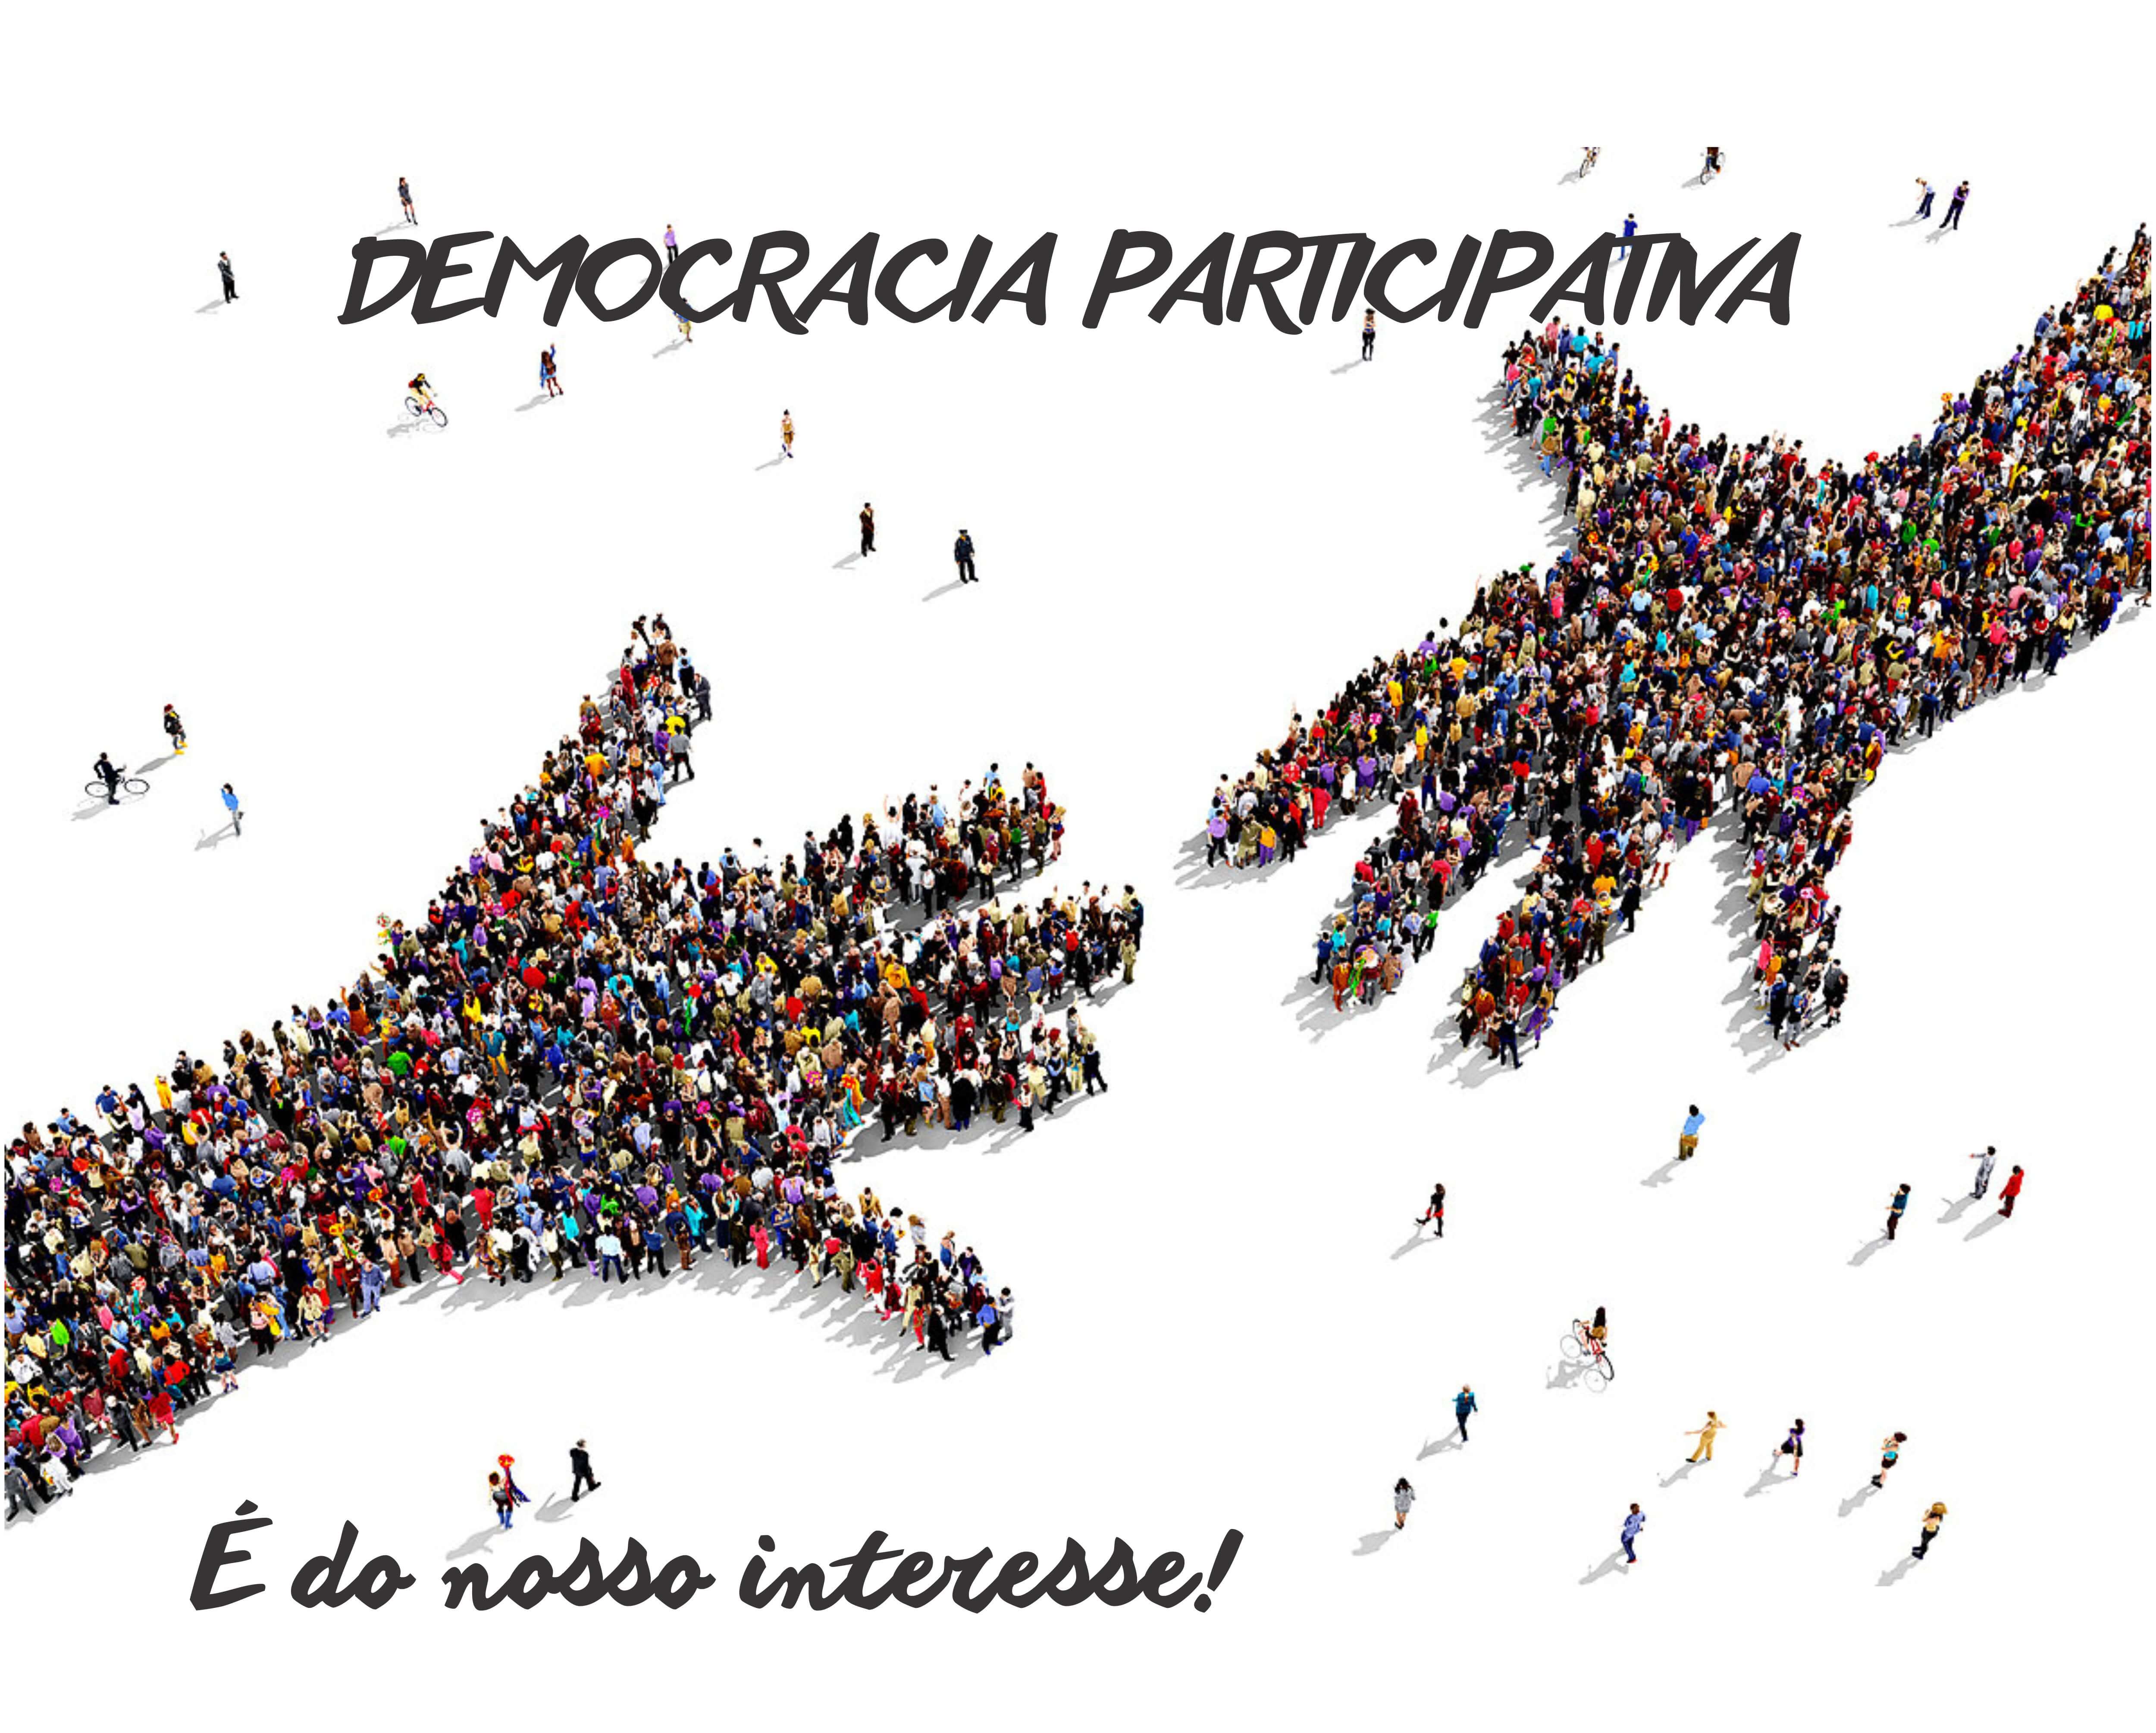 Democracia imagem (1)